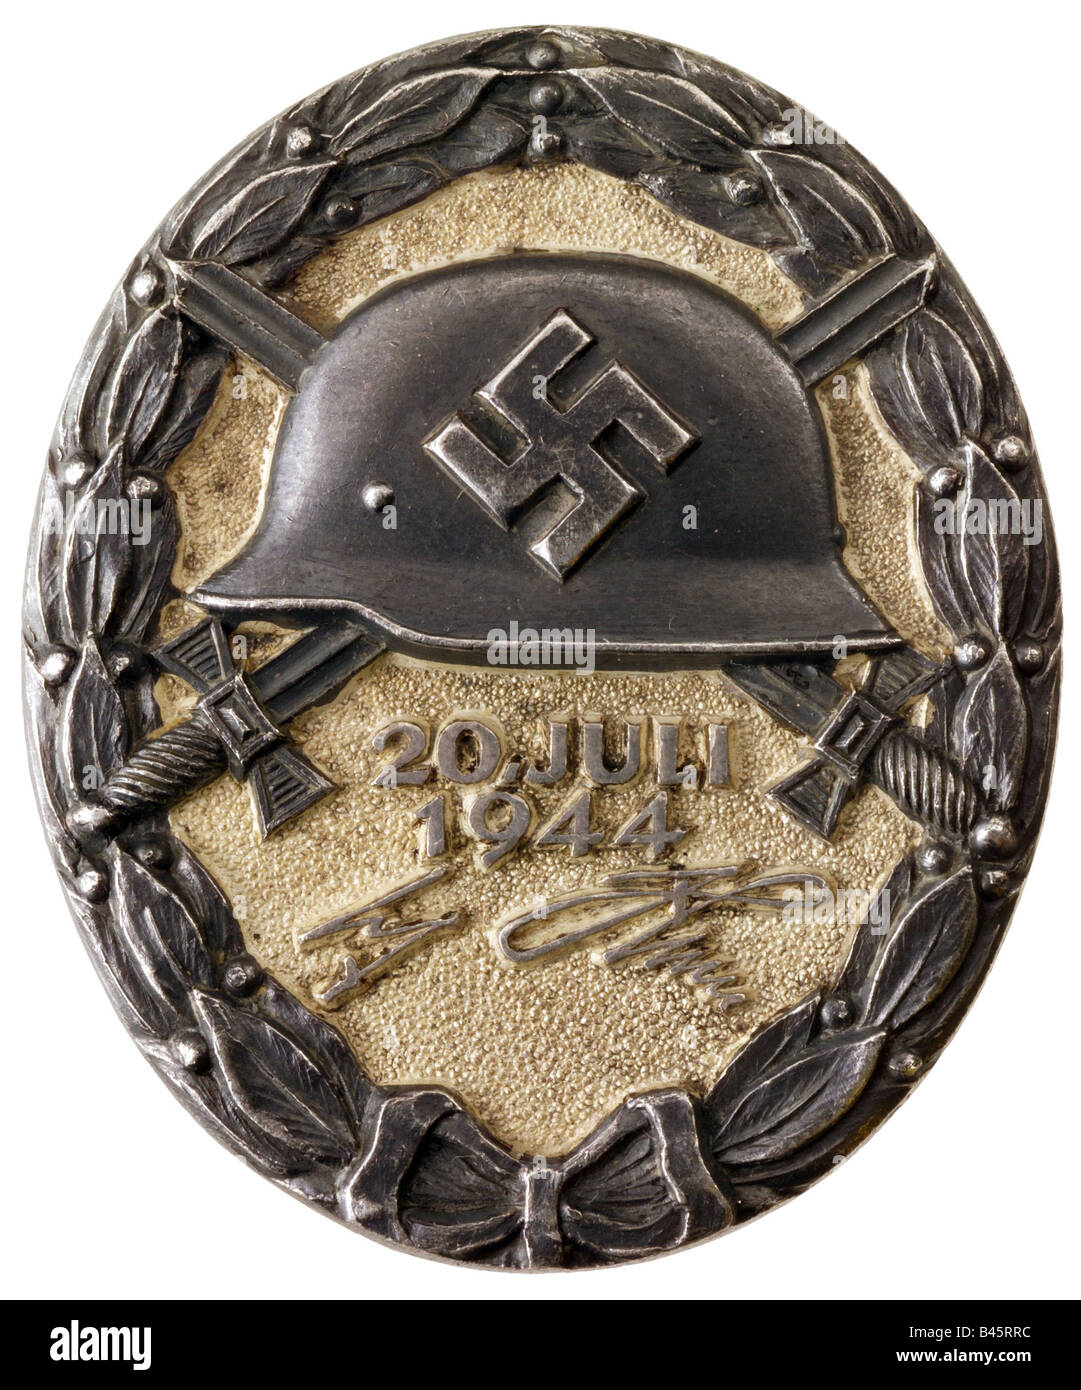 Фашистские медали